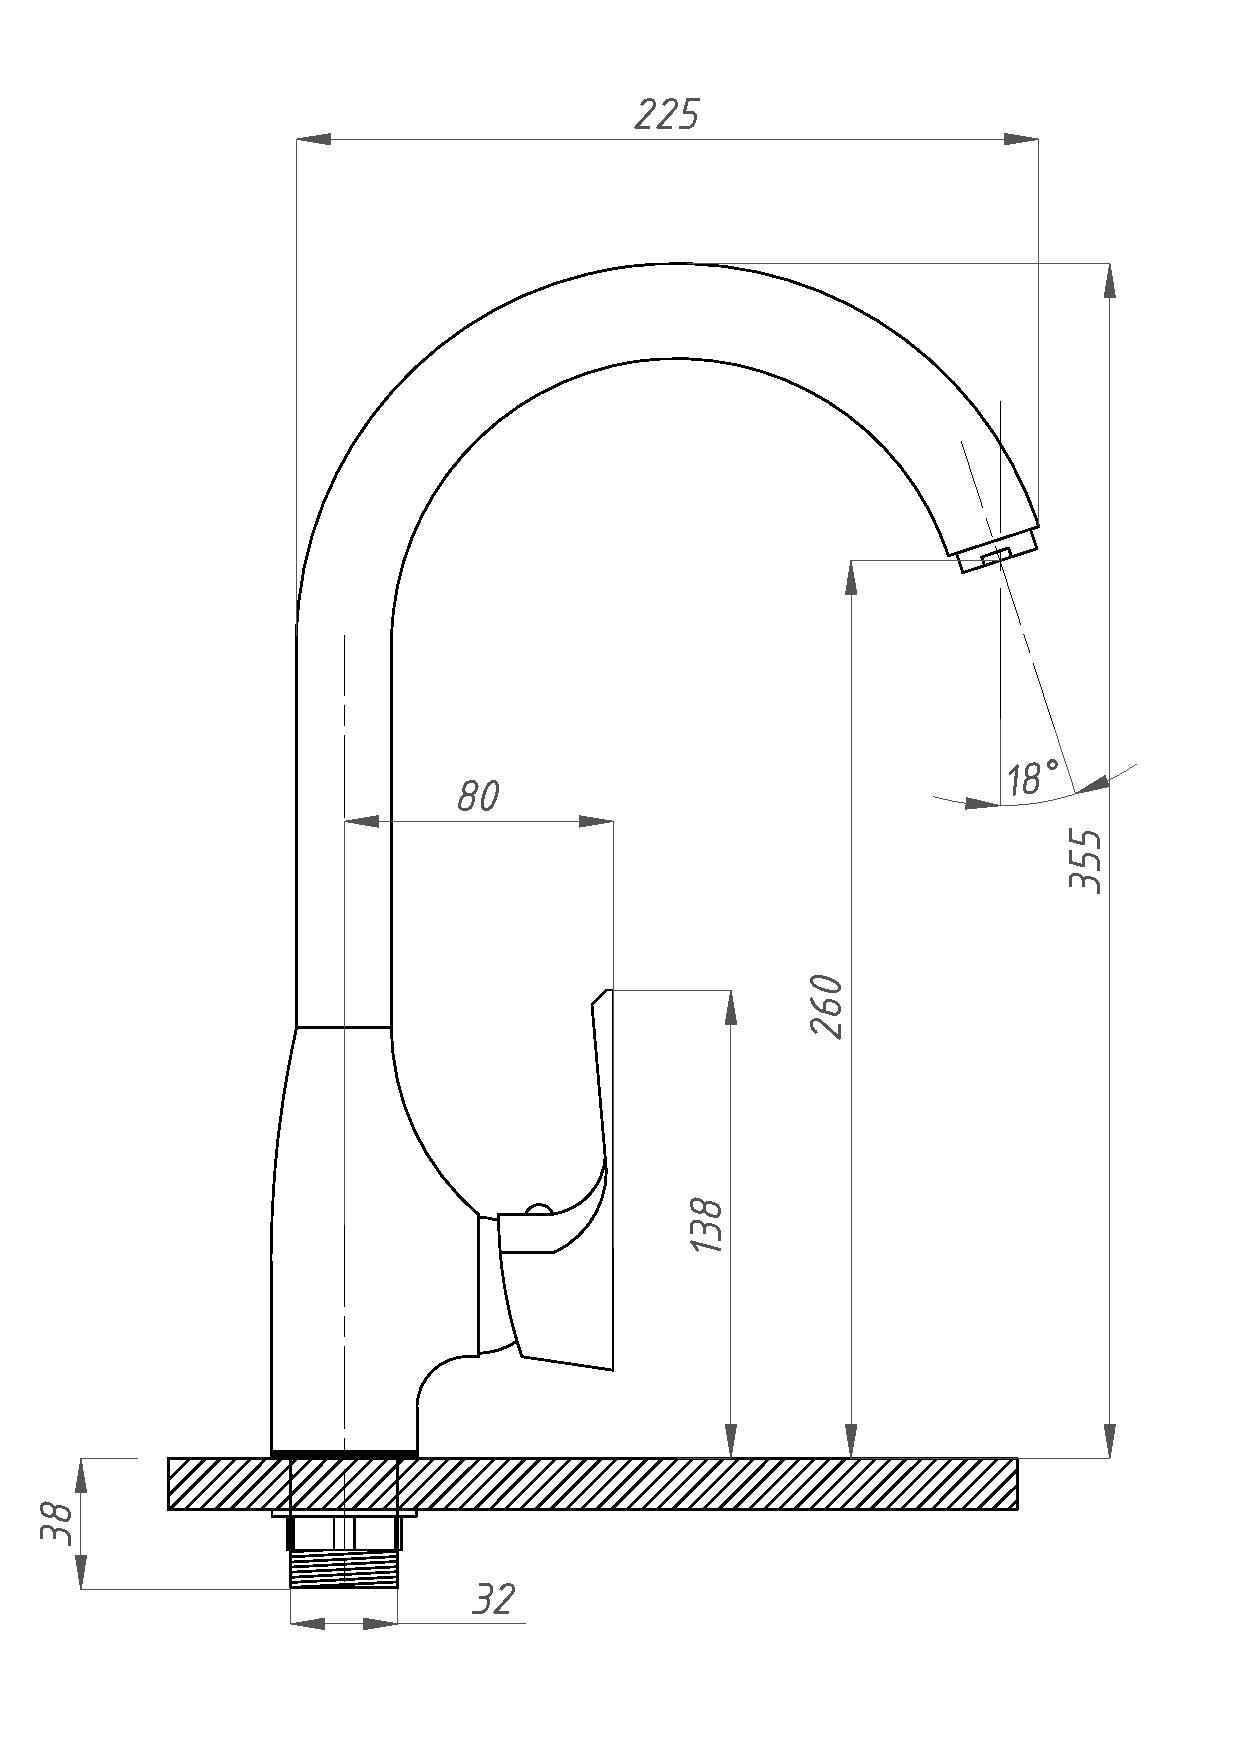 Смесители для кухни Профсан Элит ПСМ-100 длина  335 мм, однорукояточные, серебристые